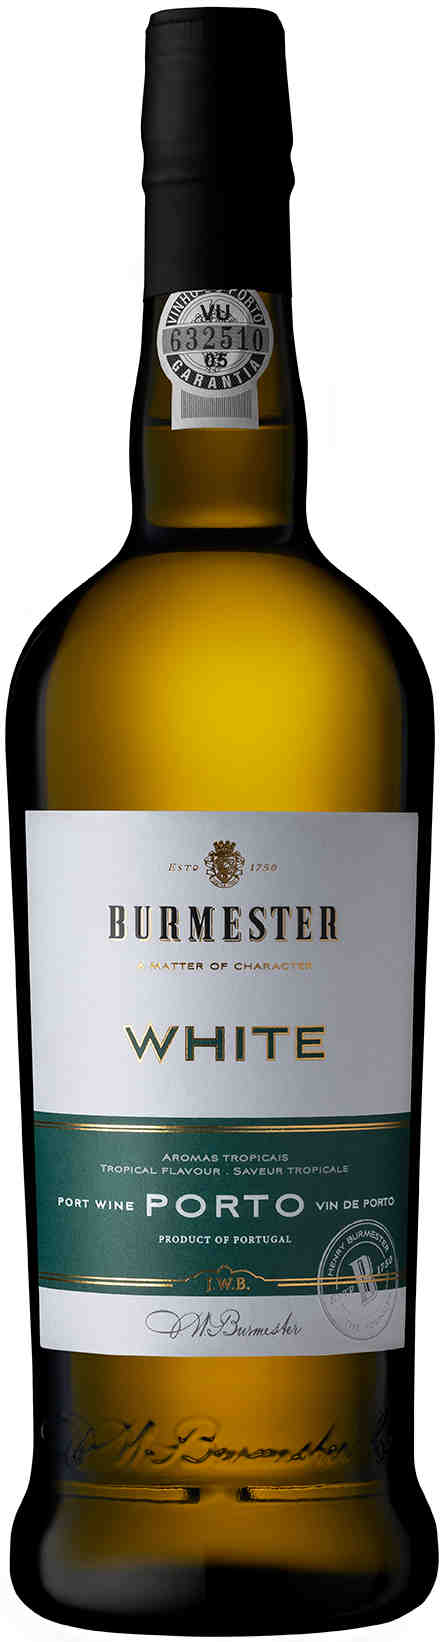 Burmester-White-Port